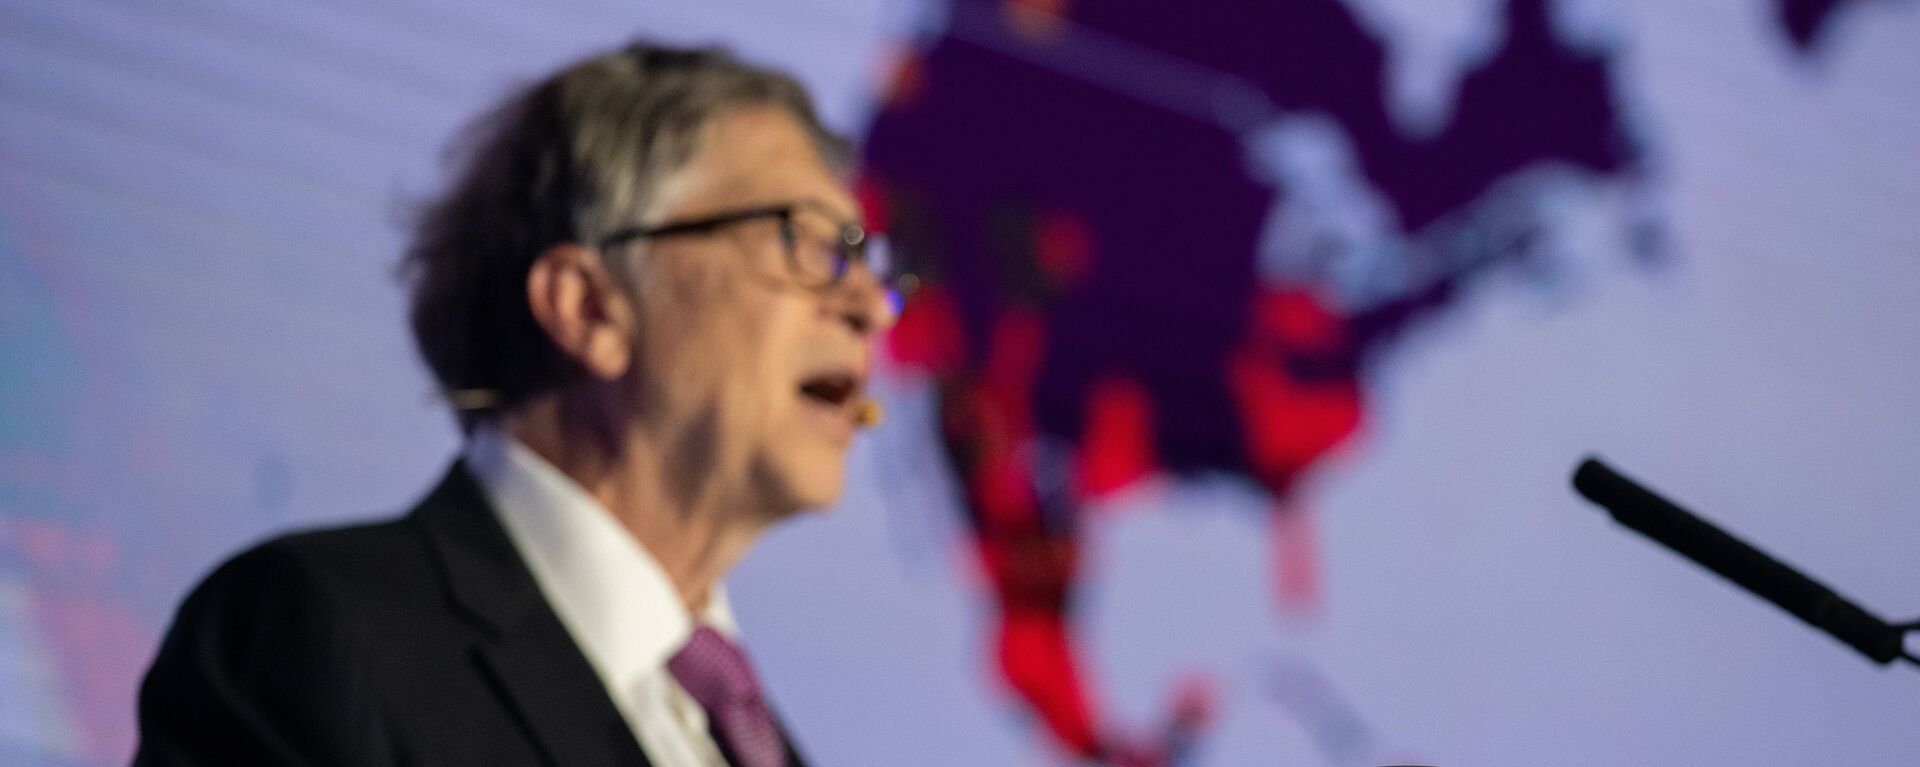 Bill Gates, sahneye dışkıyla çıktı - Sputnik Türkiye, 1920, 19.02.2019